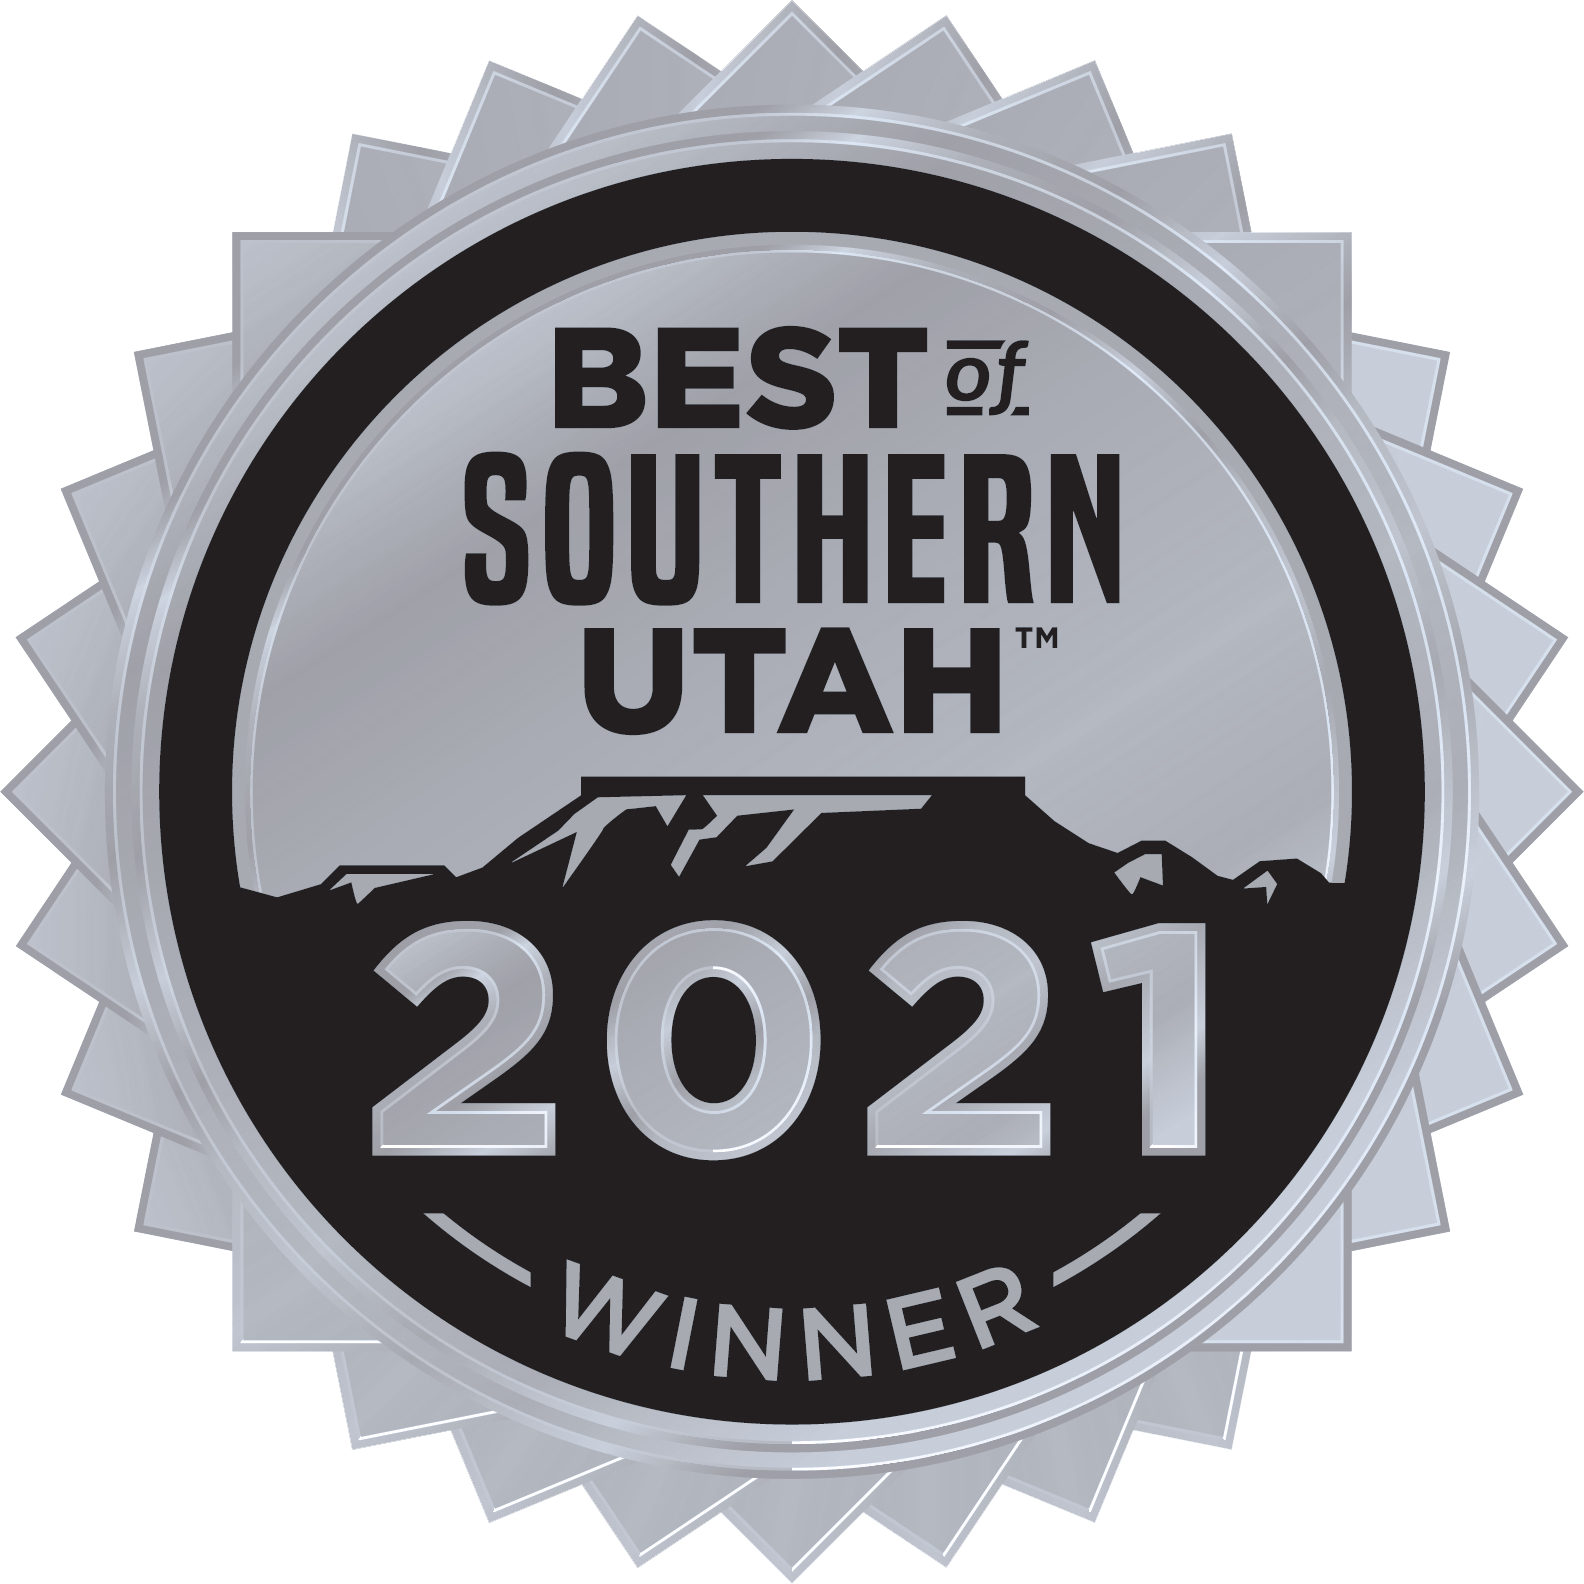 best of southern utah 2021 silver winner badge